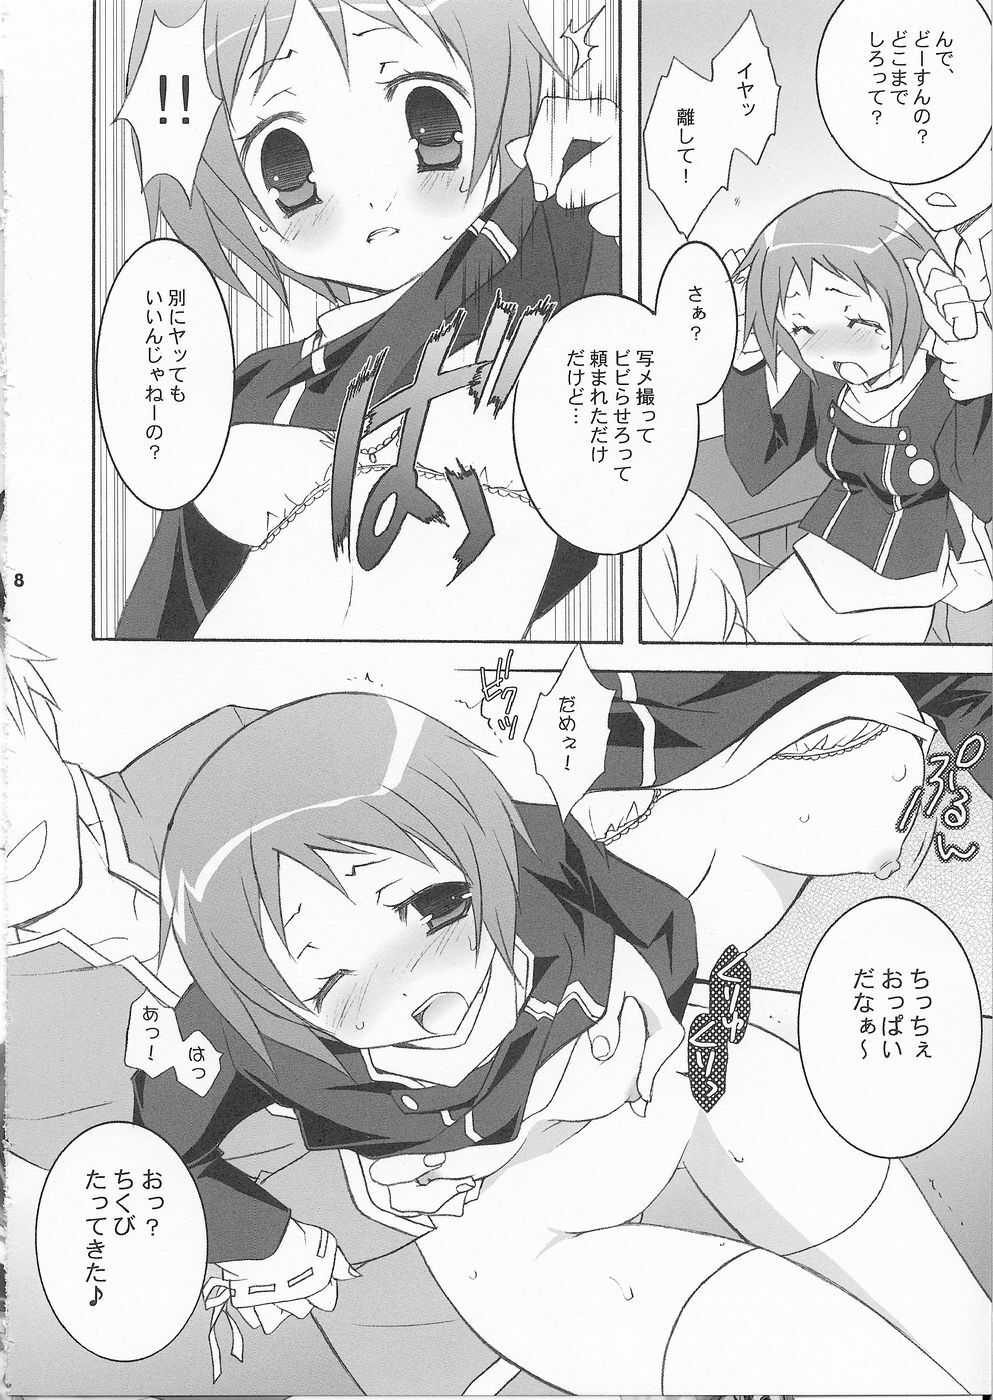 (SC33) [Tenjikuya (Mochizuki Nana)] 3P (Persona 3) page 7 full